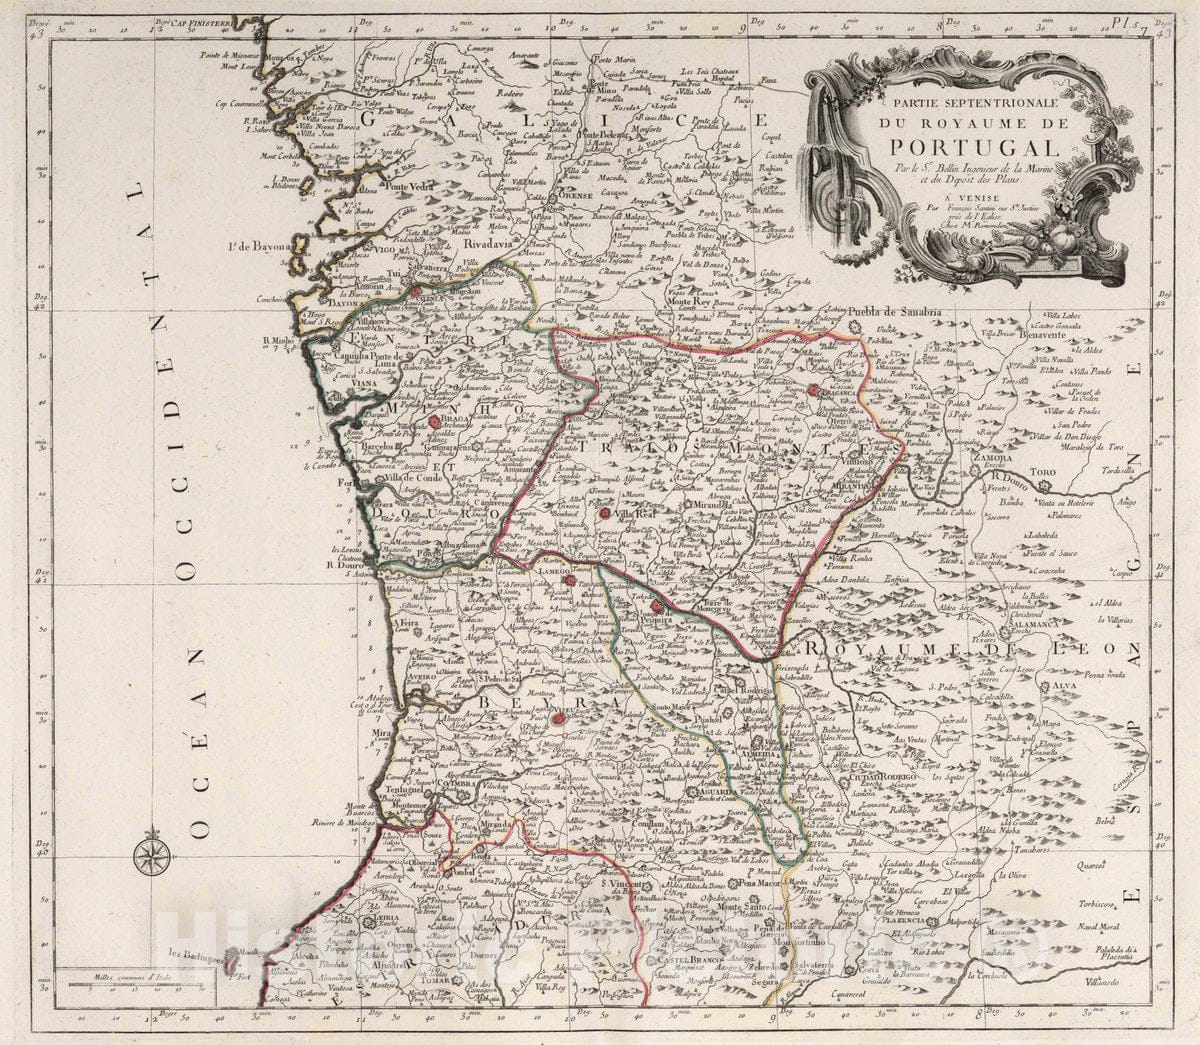 Historic Map : Portugal, 5. Partie Septentrionale du Royaume de Portugal, 1784 Atlas , Vintage Wall Art